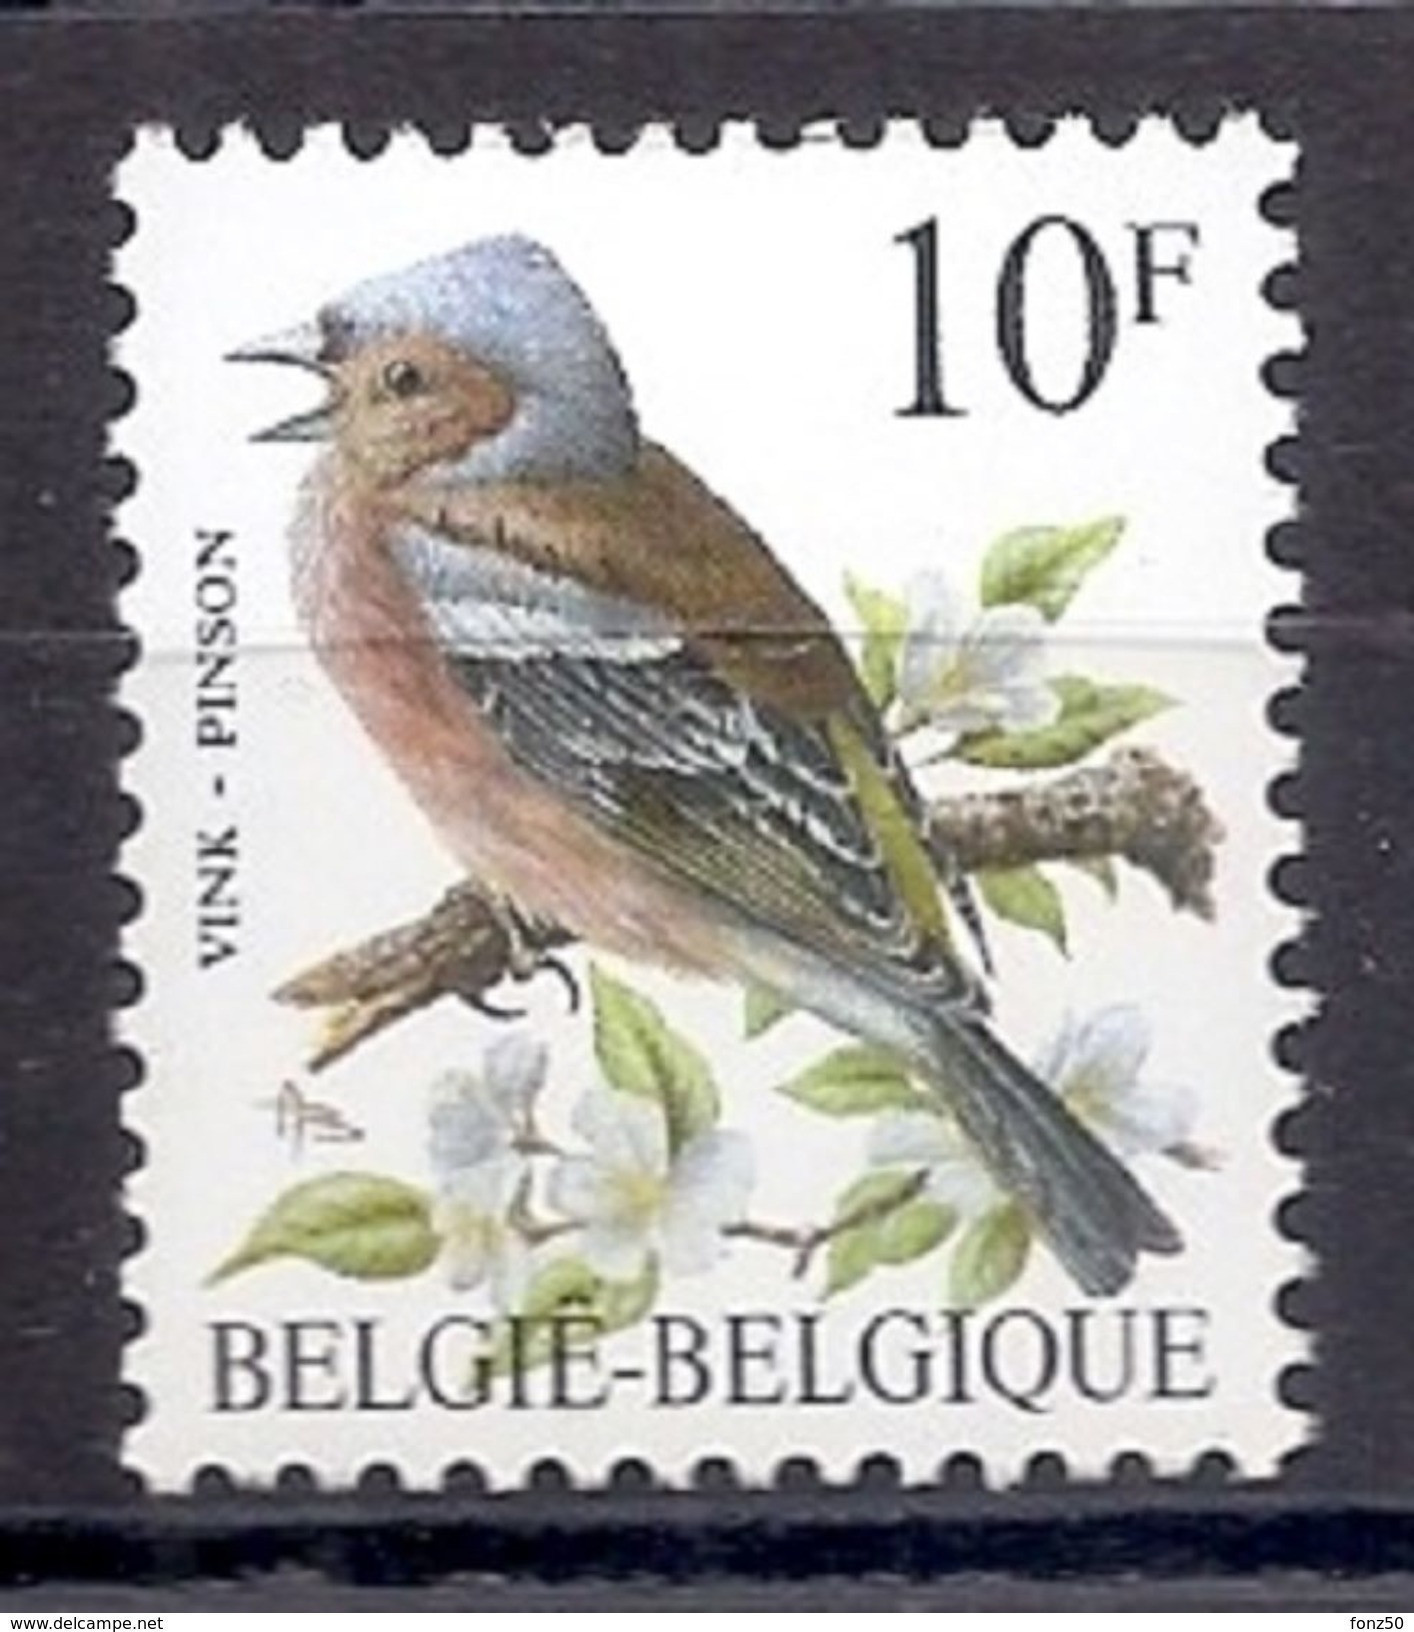 BELGIE * Buzin * Nr 2351 * Postfris Xx * HELDER WIT PAPIER - WITTE GOM - 1985-.. Birds (Buzin)